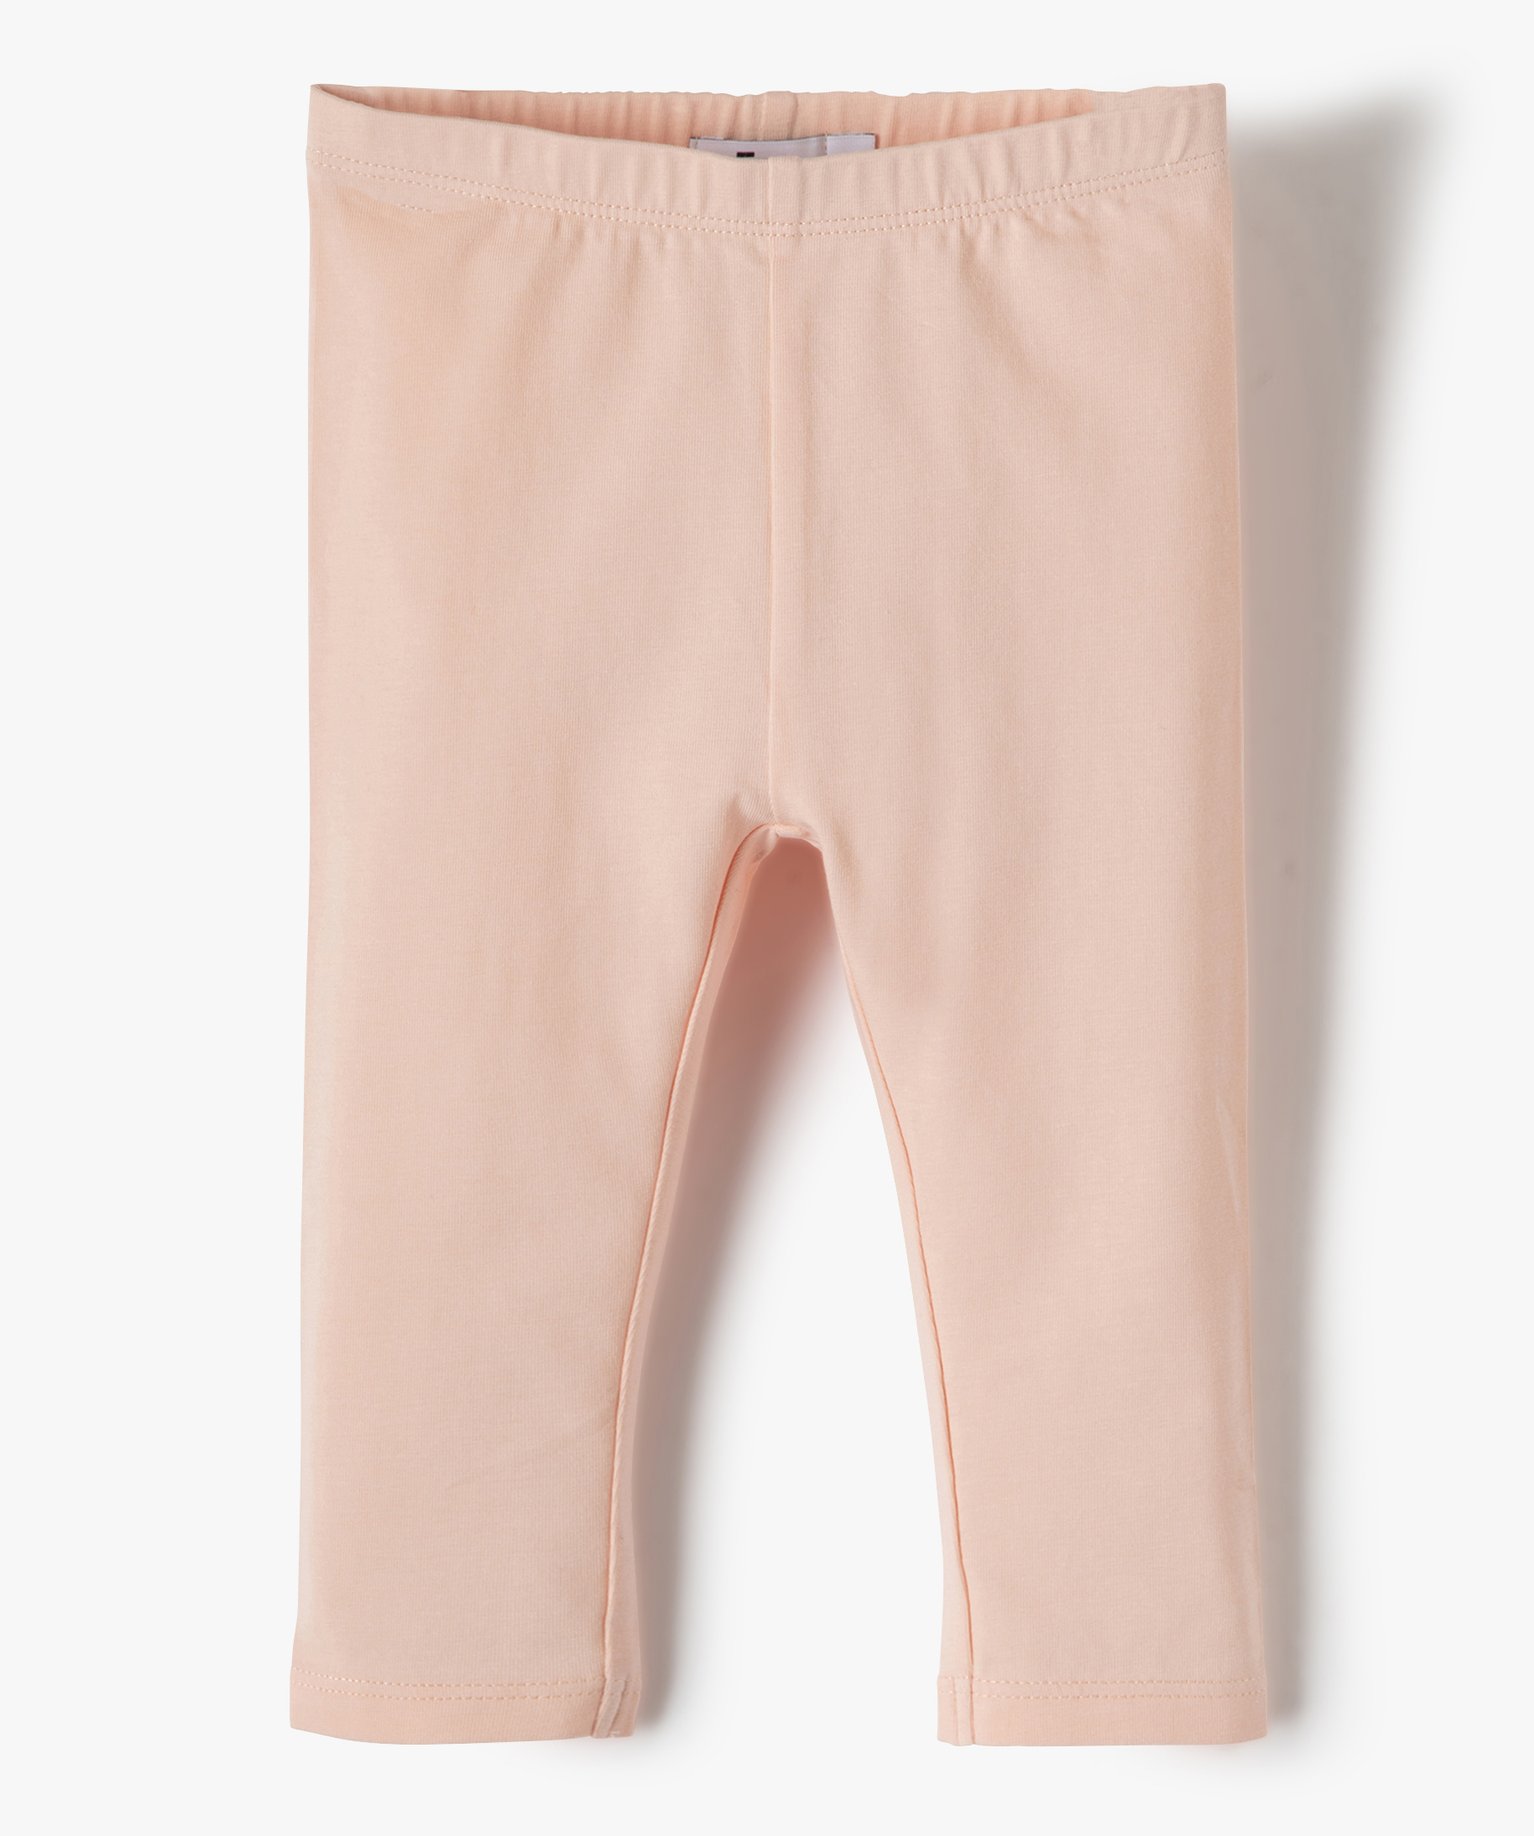 Legging long en coton stretch bébé fille - 6M - rose - GEMO